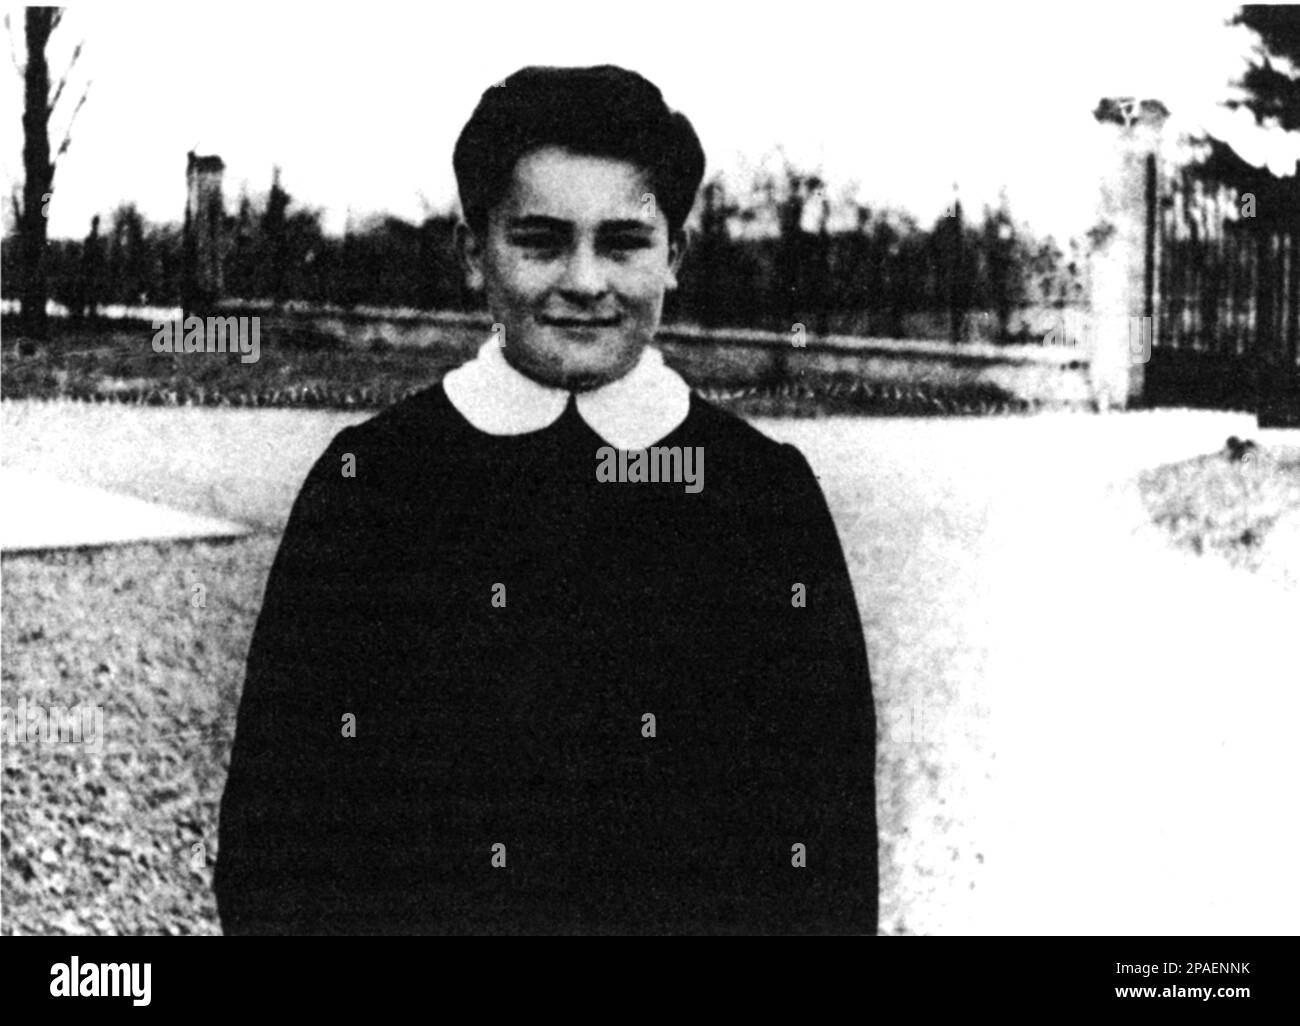 1951 , Baccanelli , ITALIA : il regista ITALIANO BERNARDO BERTOLUCCI ( 1941 - 2018 ) 10 anni a scuola .- CINEMA - registrazione cinematografico - ritratto - ritratto - personalità da giovane bambino da piccolo - personalità celebrità celebrità quando era giovane bambino bambino - a scuola - scolaro - scuola - scuola - infanzia - infanzia --- Archivio GBB Foto Stock